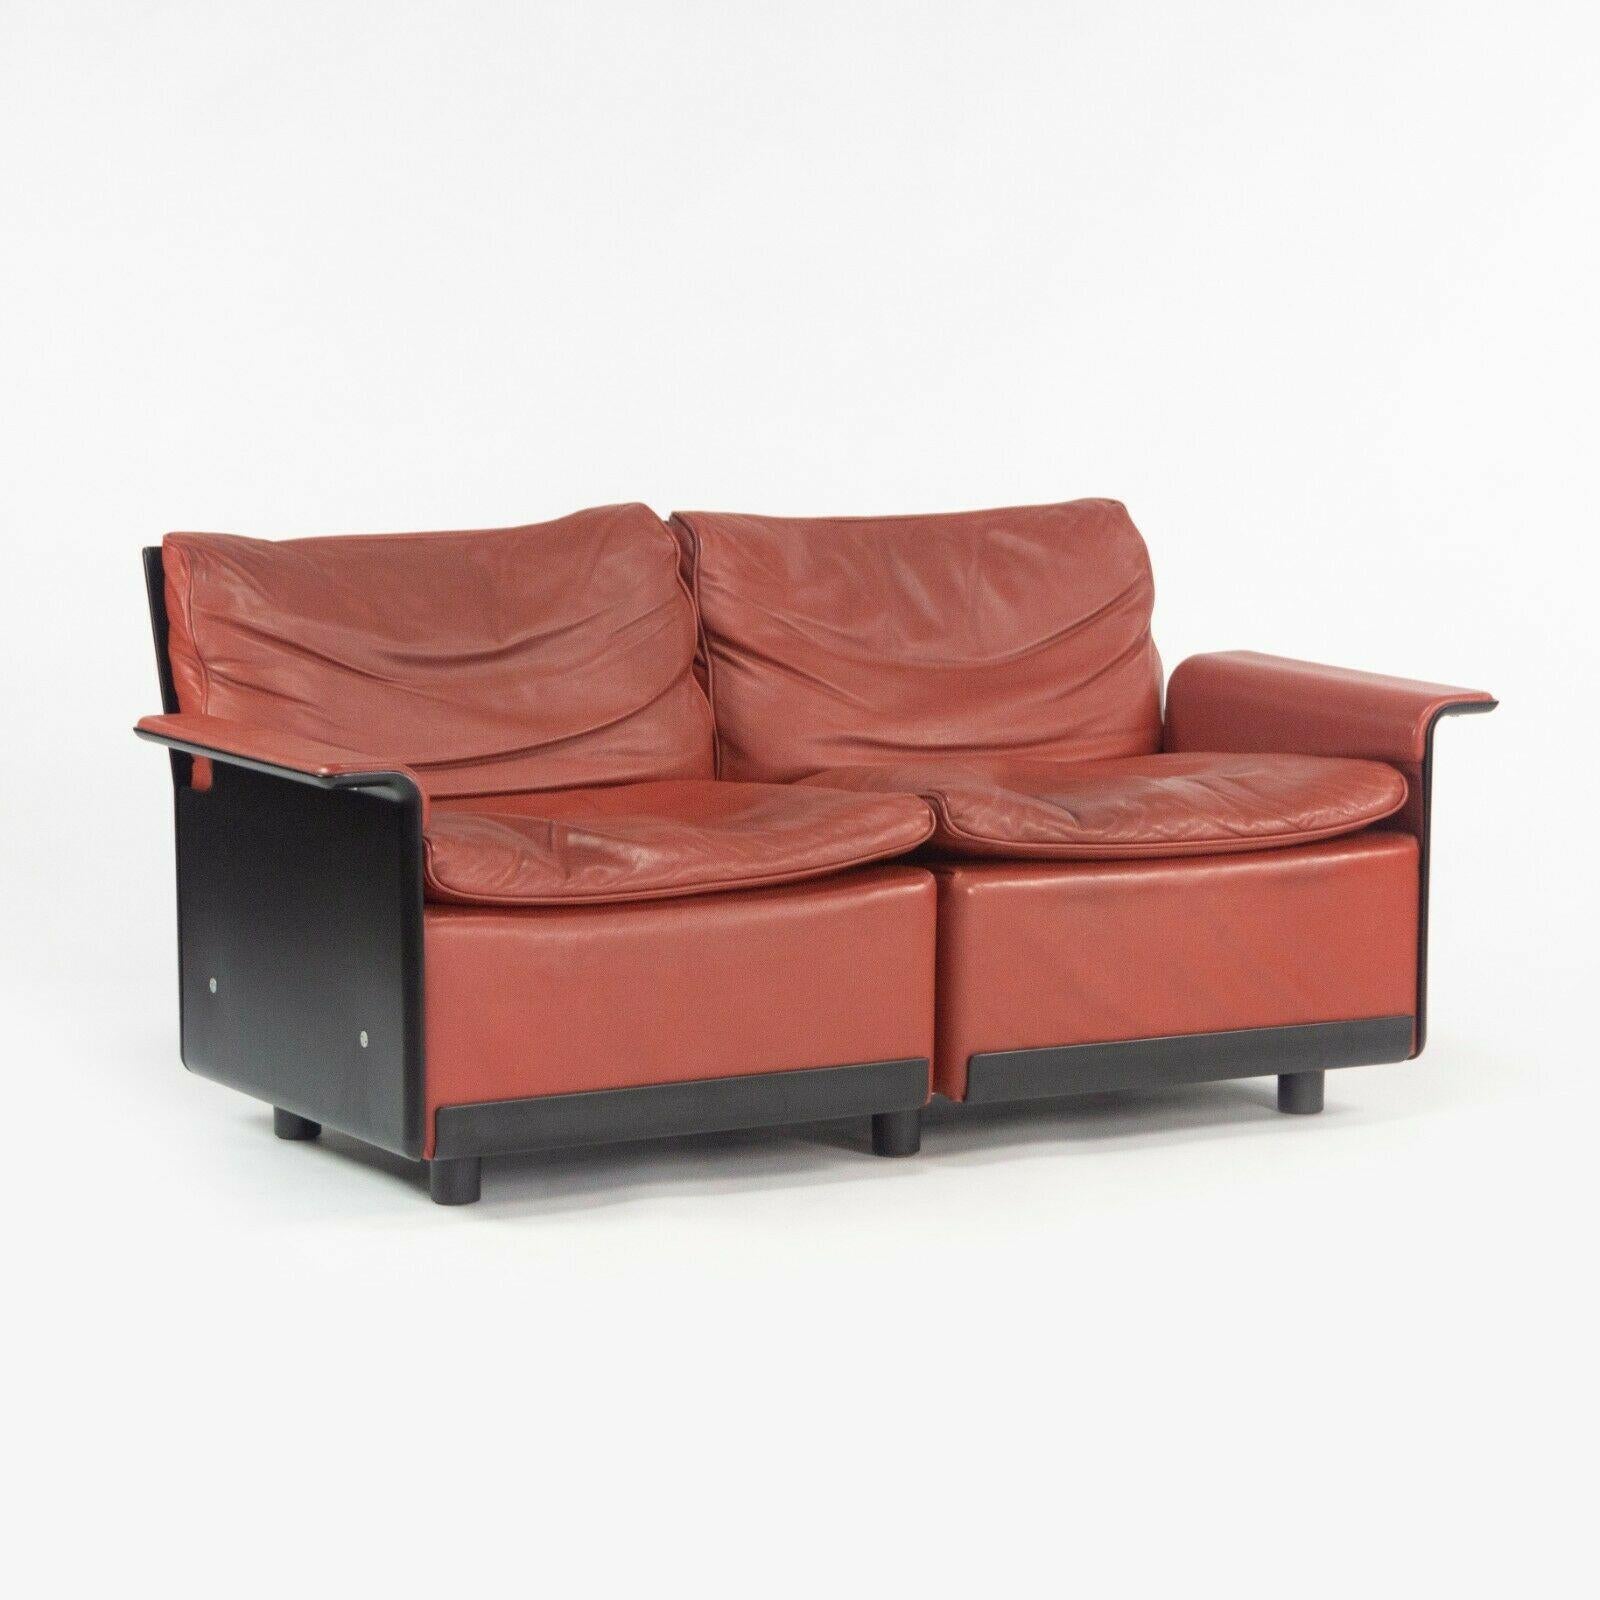 Zum Verkauf steht ein seltener Zweisitzer-Sofa von Dieter Rams für Vitsoe 620 mit wunderschönem rotem Lederbezug und schwarzer Verkleidung. Dies ist einer unserer Favoriten, denn Dieter Rams ist natürlich einer der beliebtesten Industriedesigner der